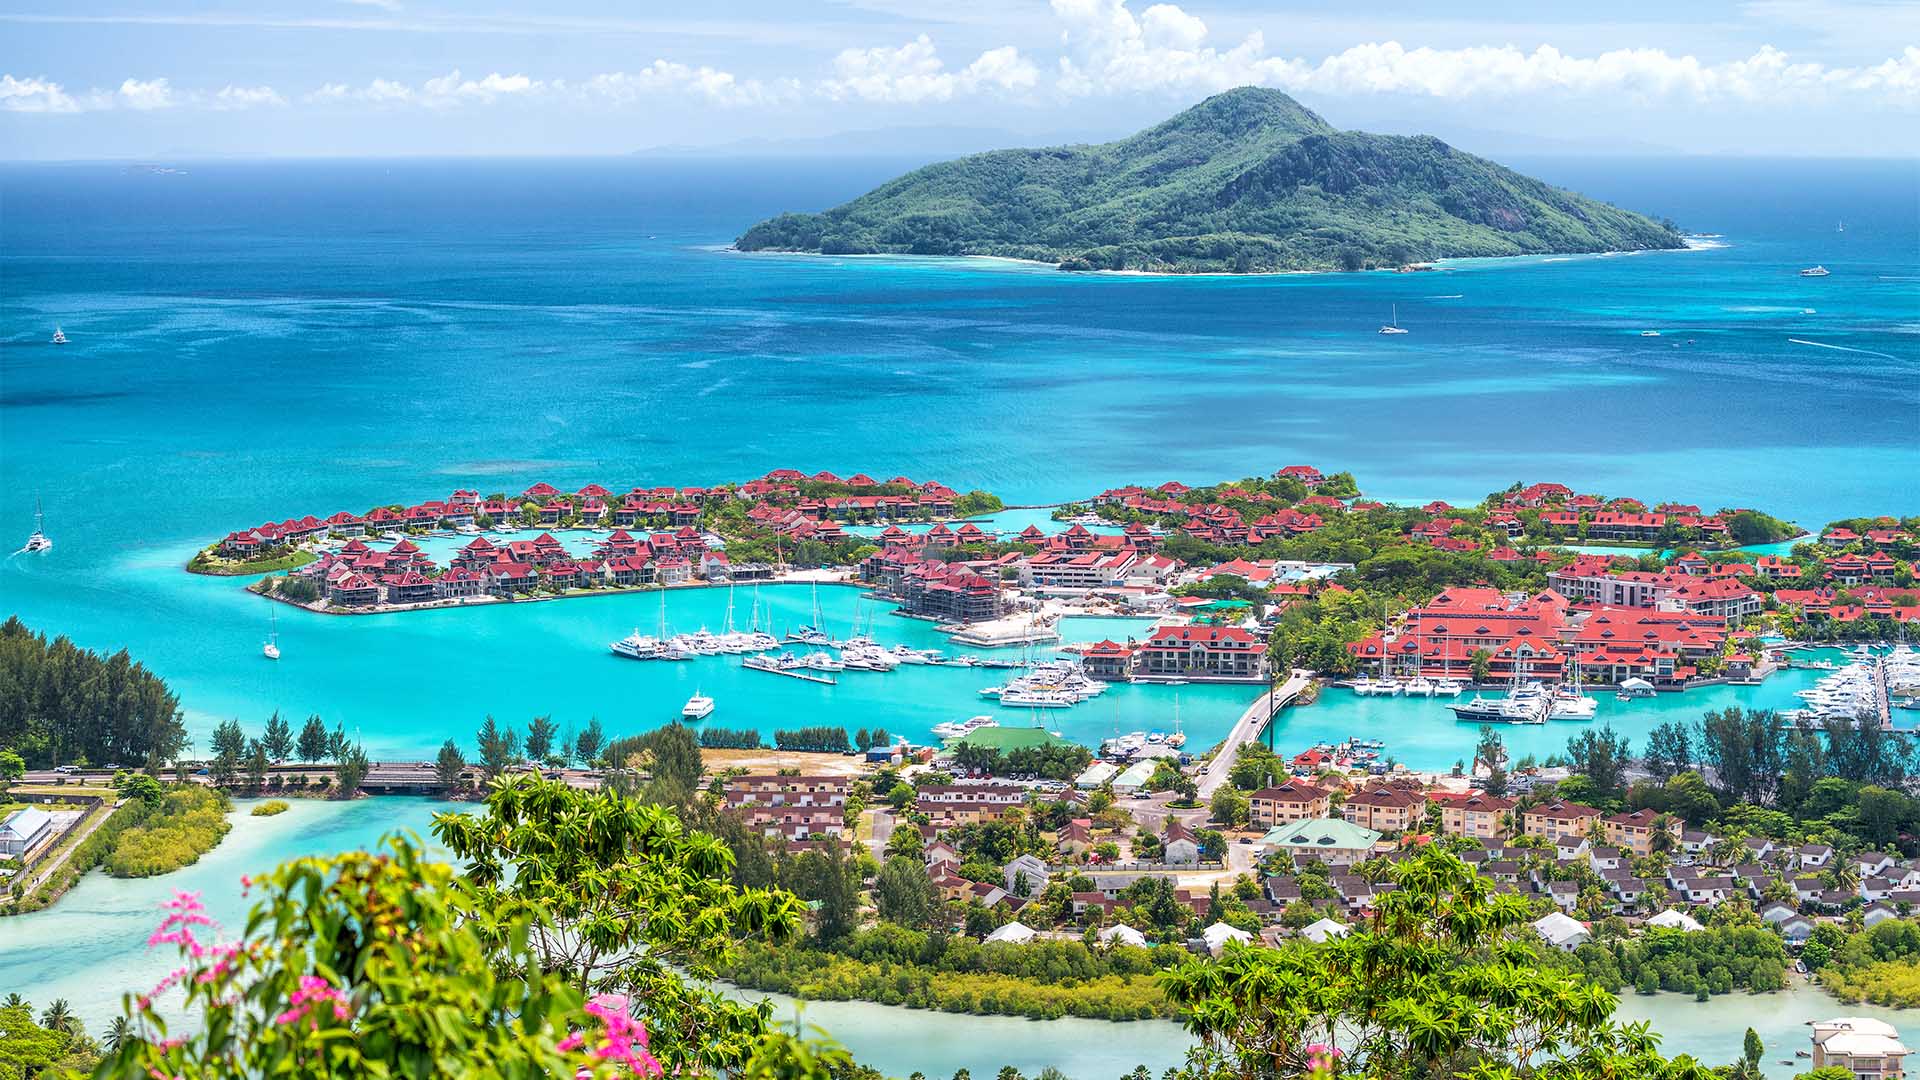 Travel Insurance for Seychelles Trips